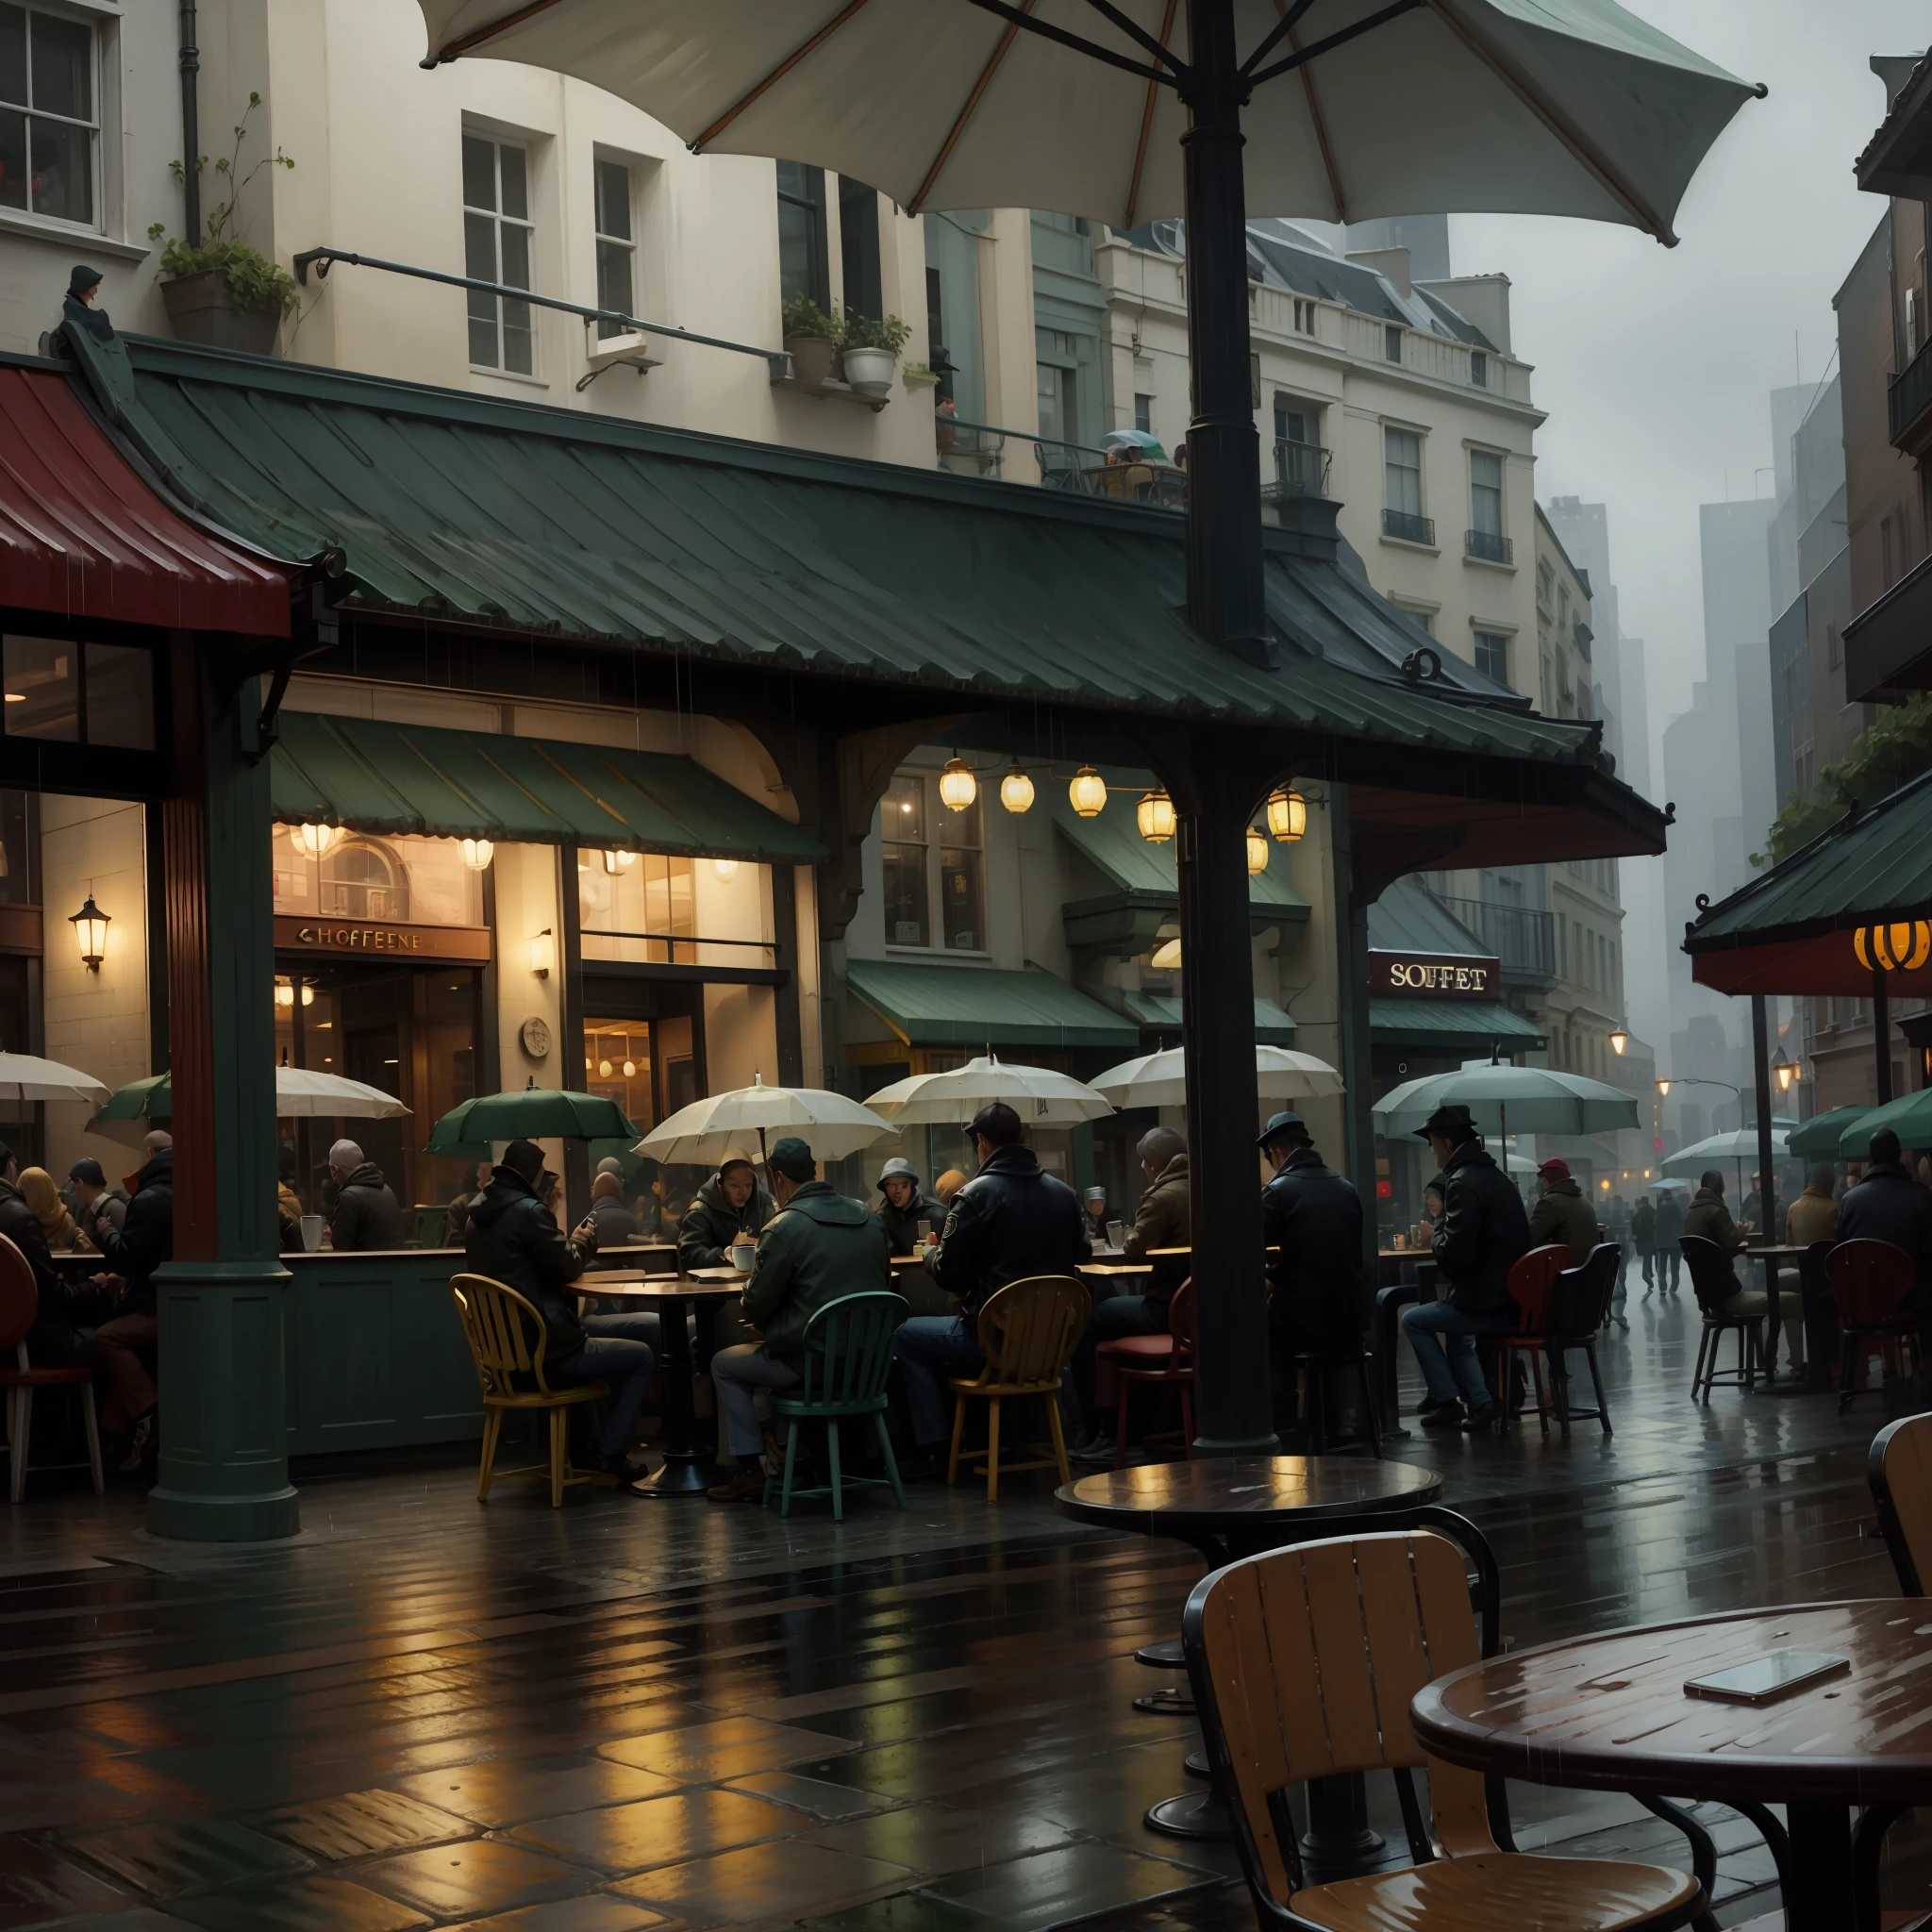 vg,mesas e cadeiras e pessoas em uma cafeteria em uma rua da cidade,chuva,detalhes,carros